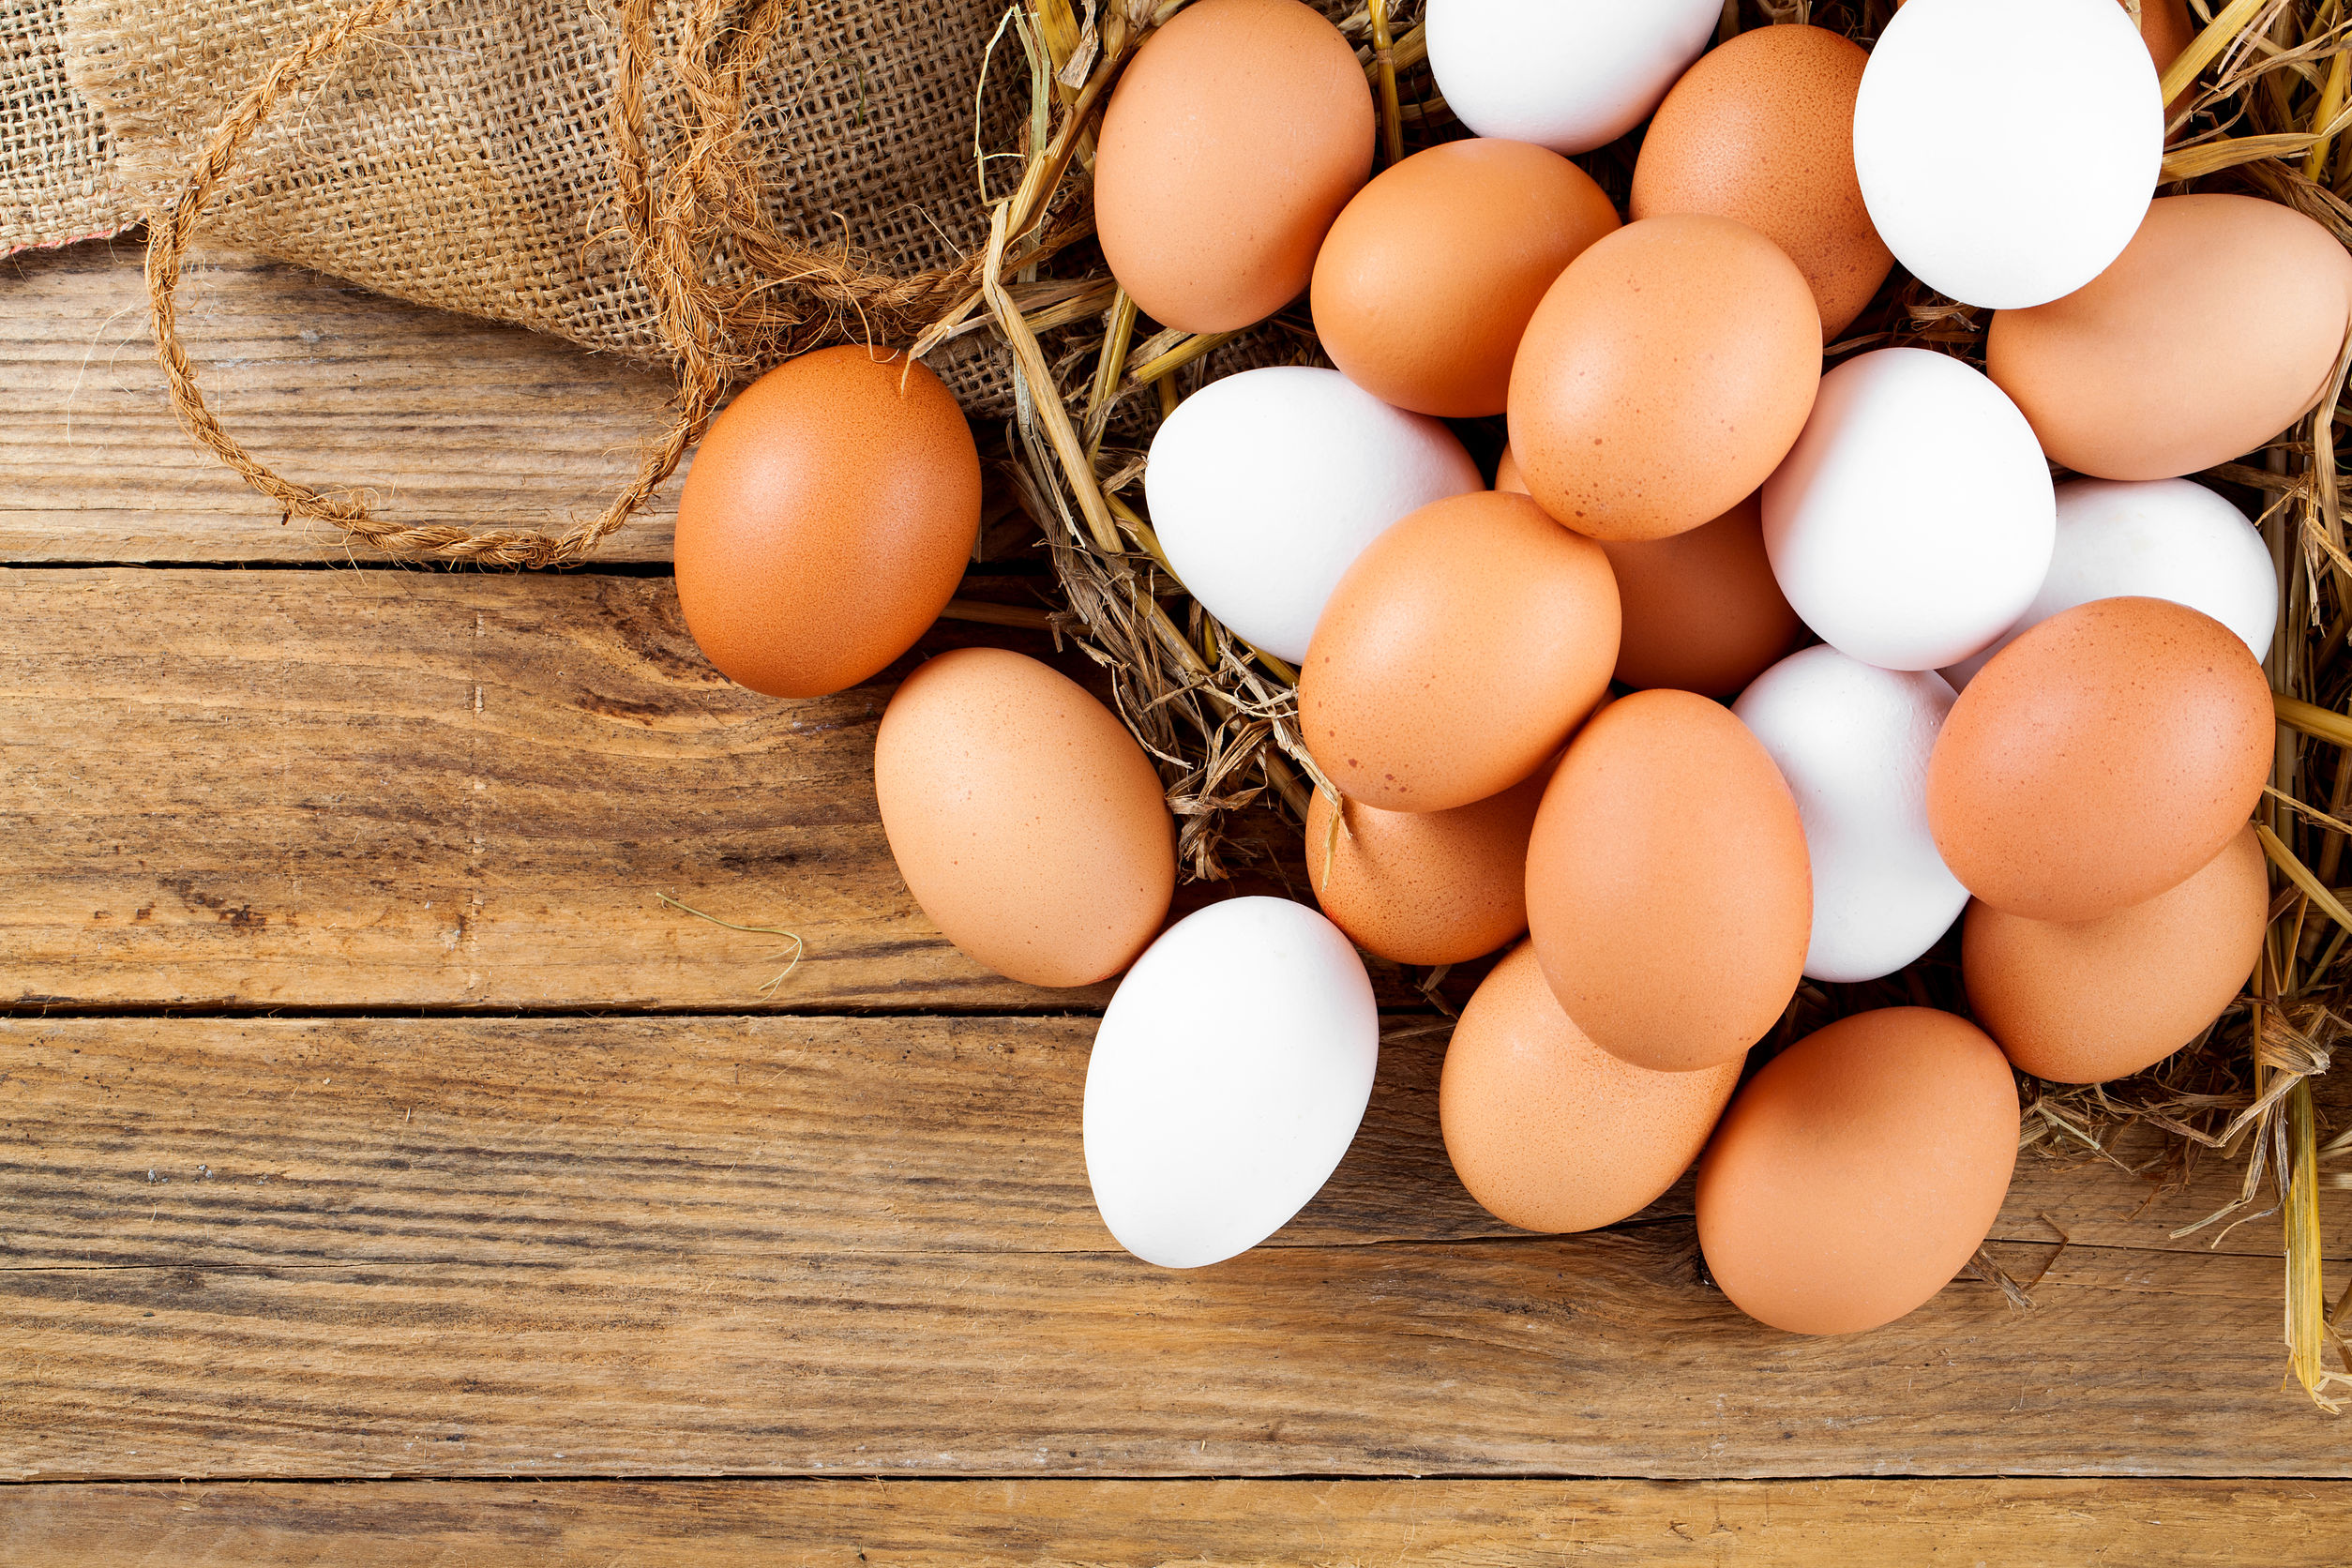 AMOR E ÓD1O: Saiba se comer ovo ainda é saudável e se afeta colesterol